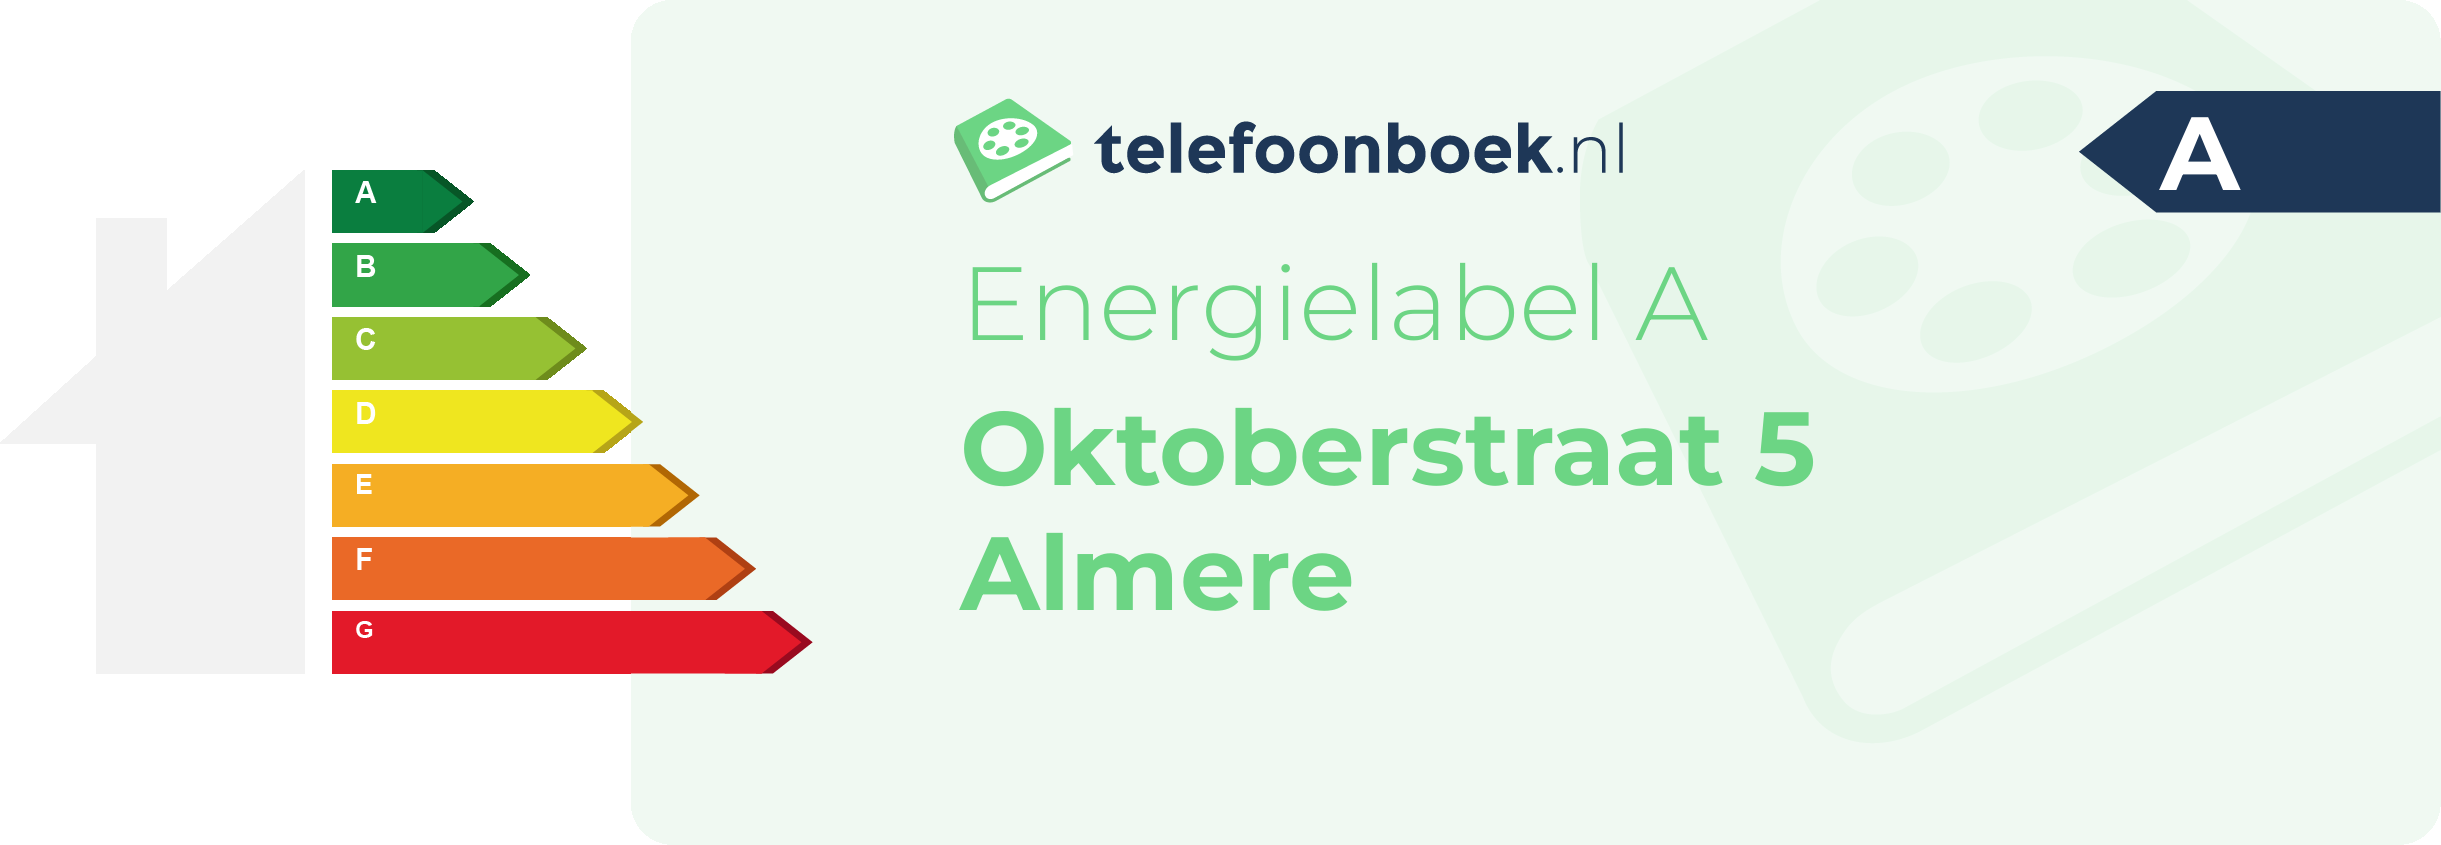 Energielabel Oktoberstraat 5 Almere